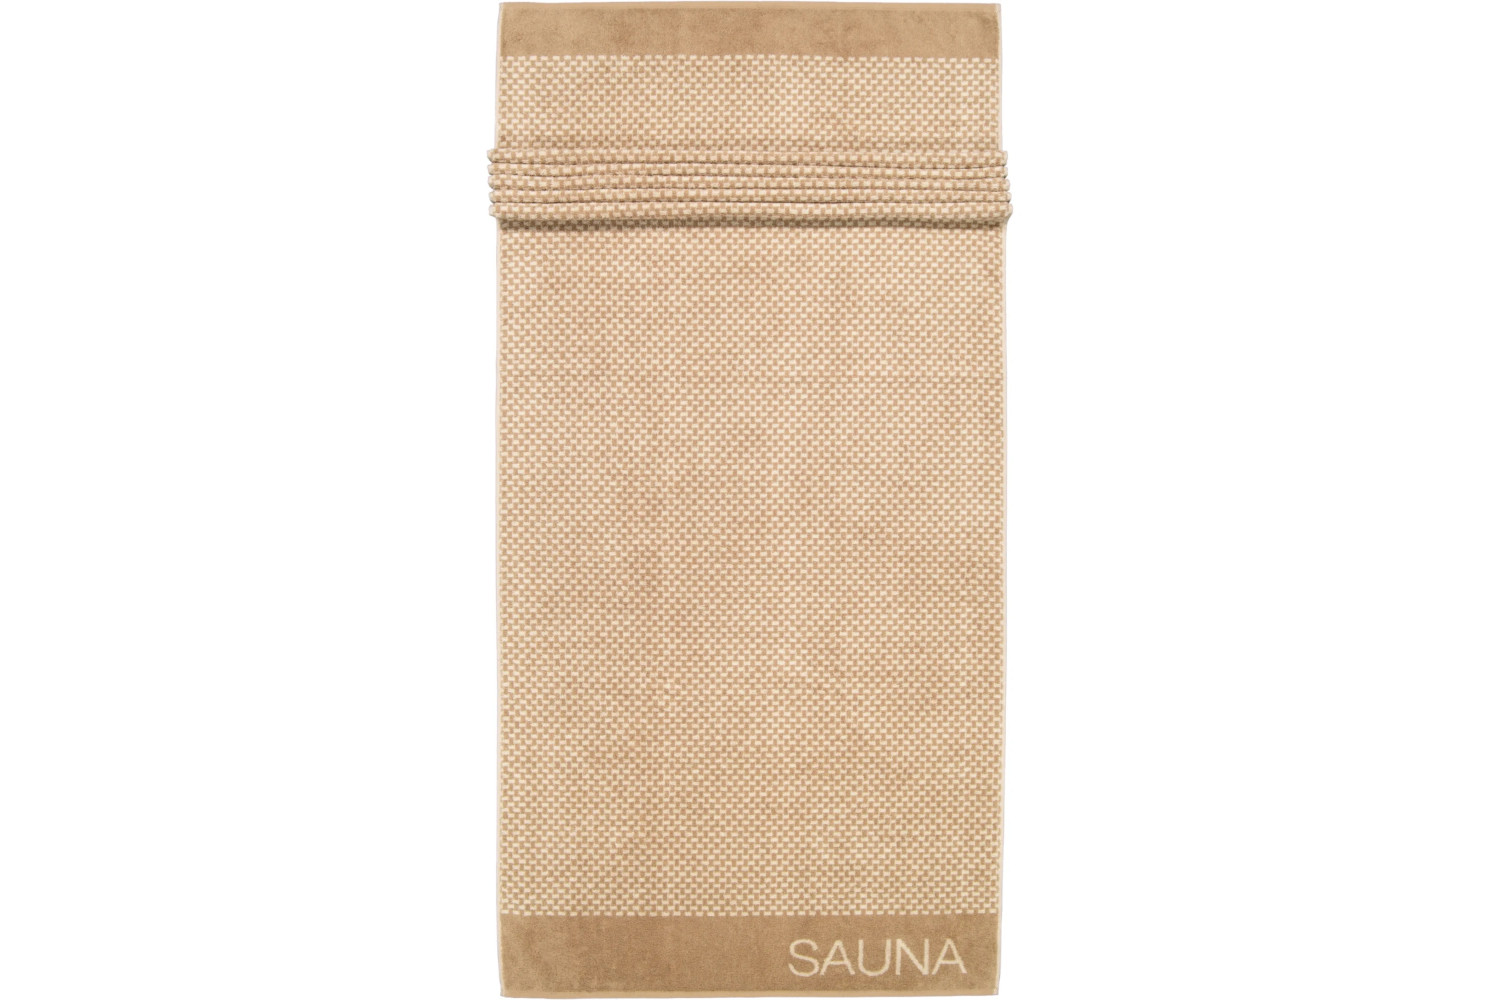 Cawö Saunatuch - Natural Allover - aus 100% Baumwolle, 80x200 cm 